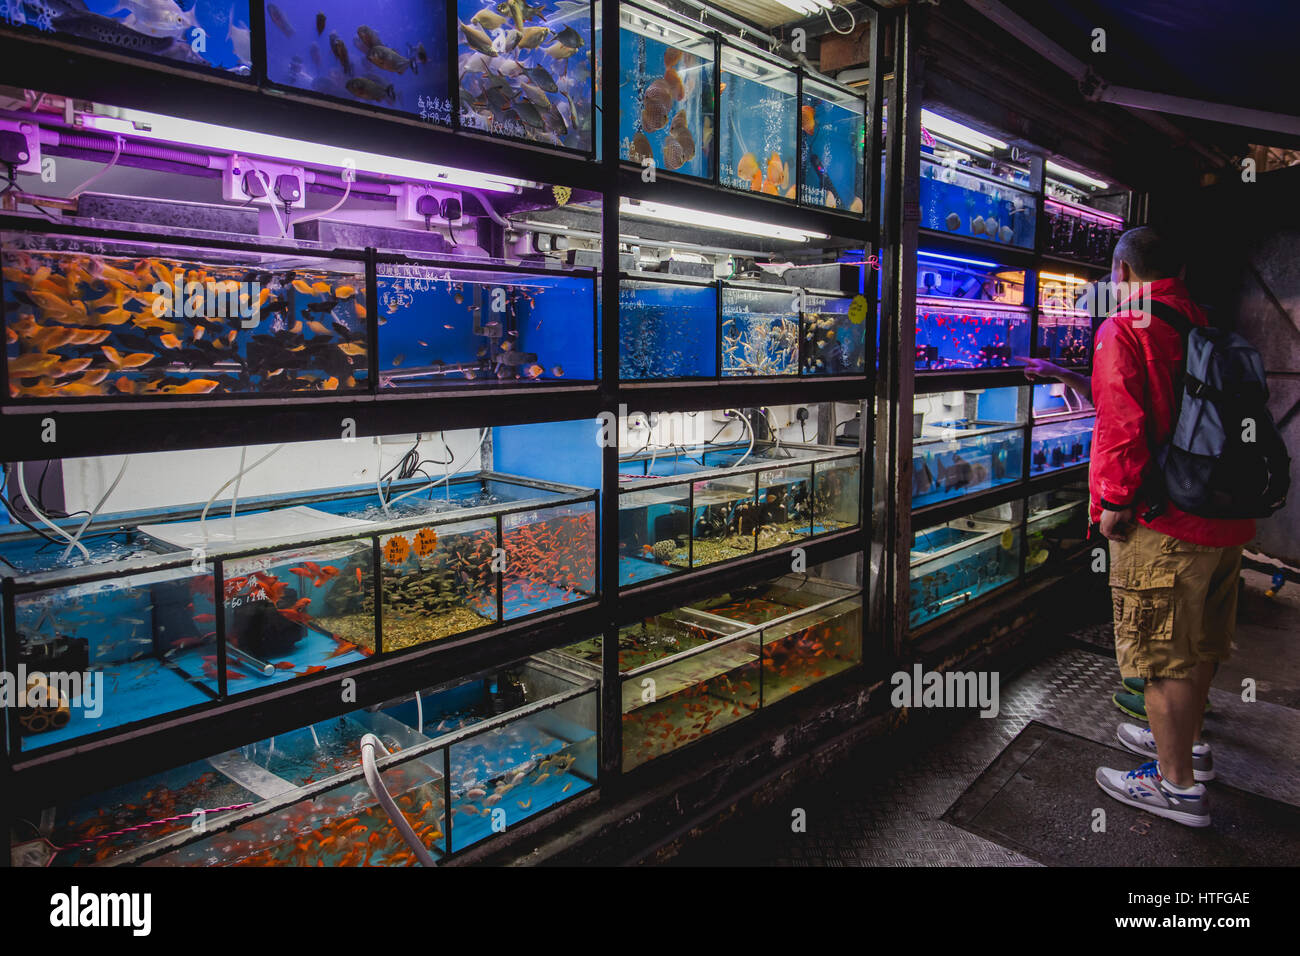 L'homme à la recherche de l'aquarium à fishesin marché goldfish Tung Choi Street, hong kong Banque D'Images